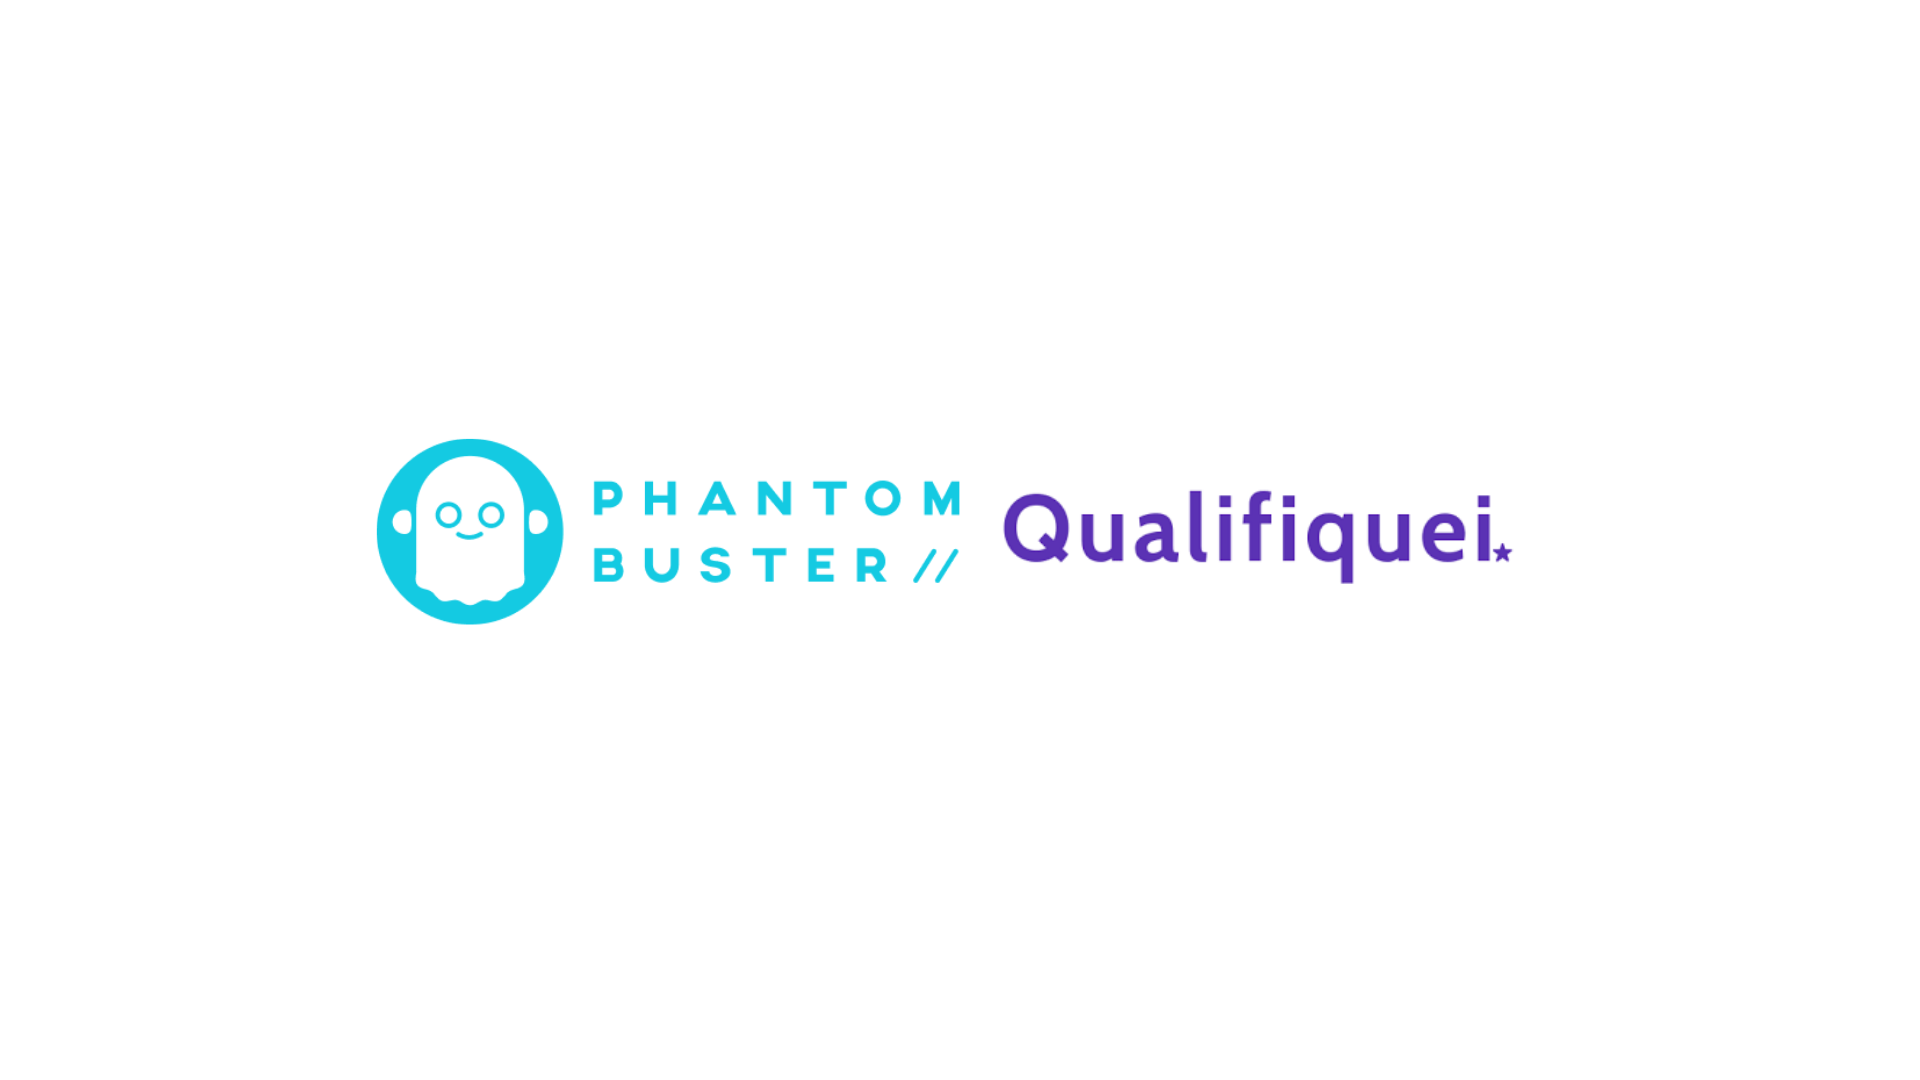 Phantom Buster x Qualifiquei: Conheça as diferenças